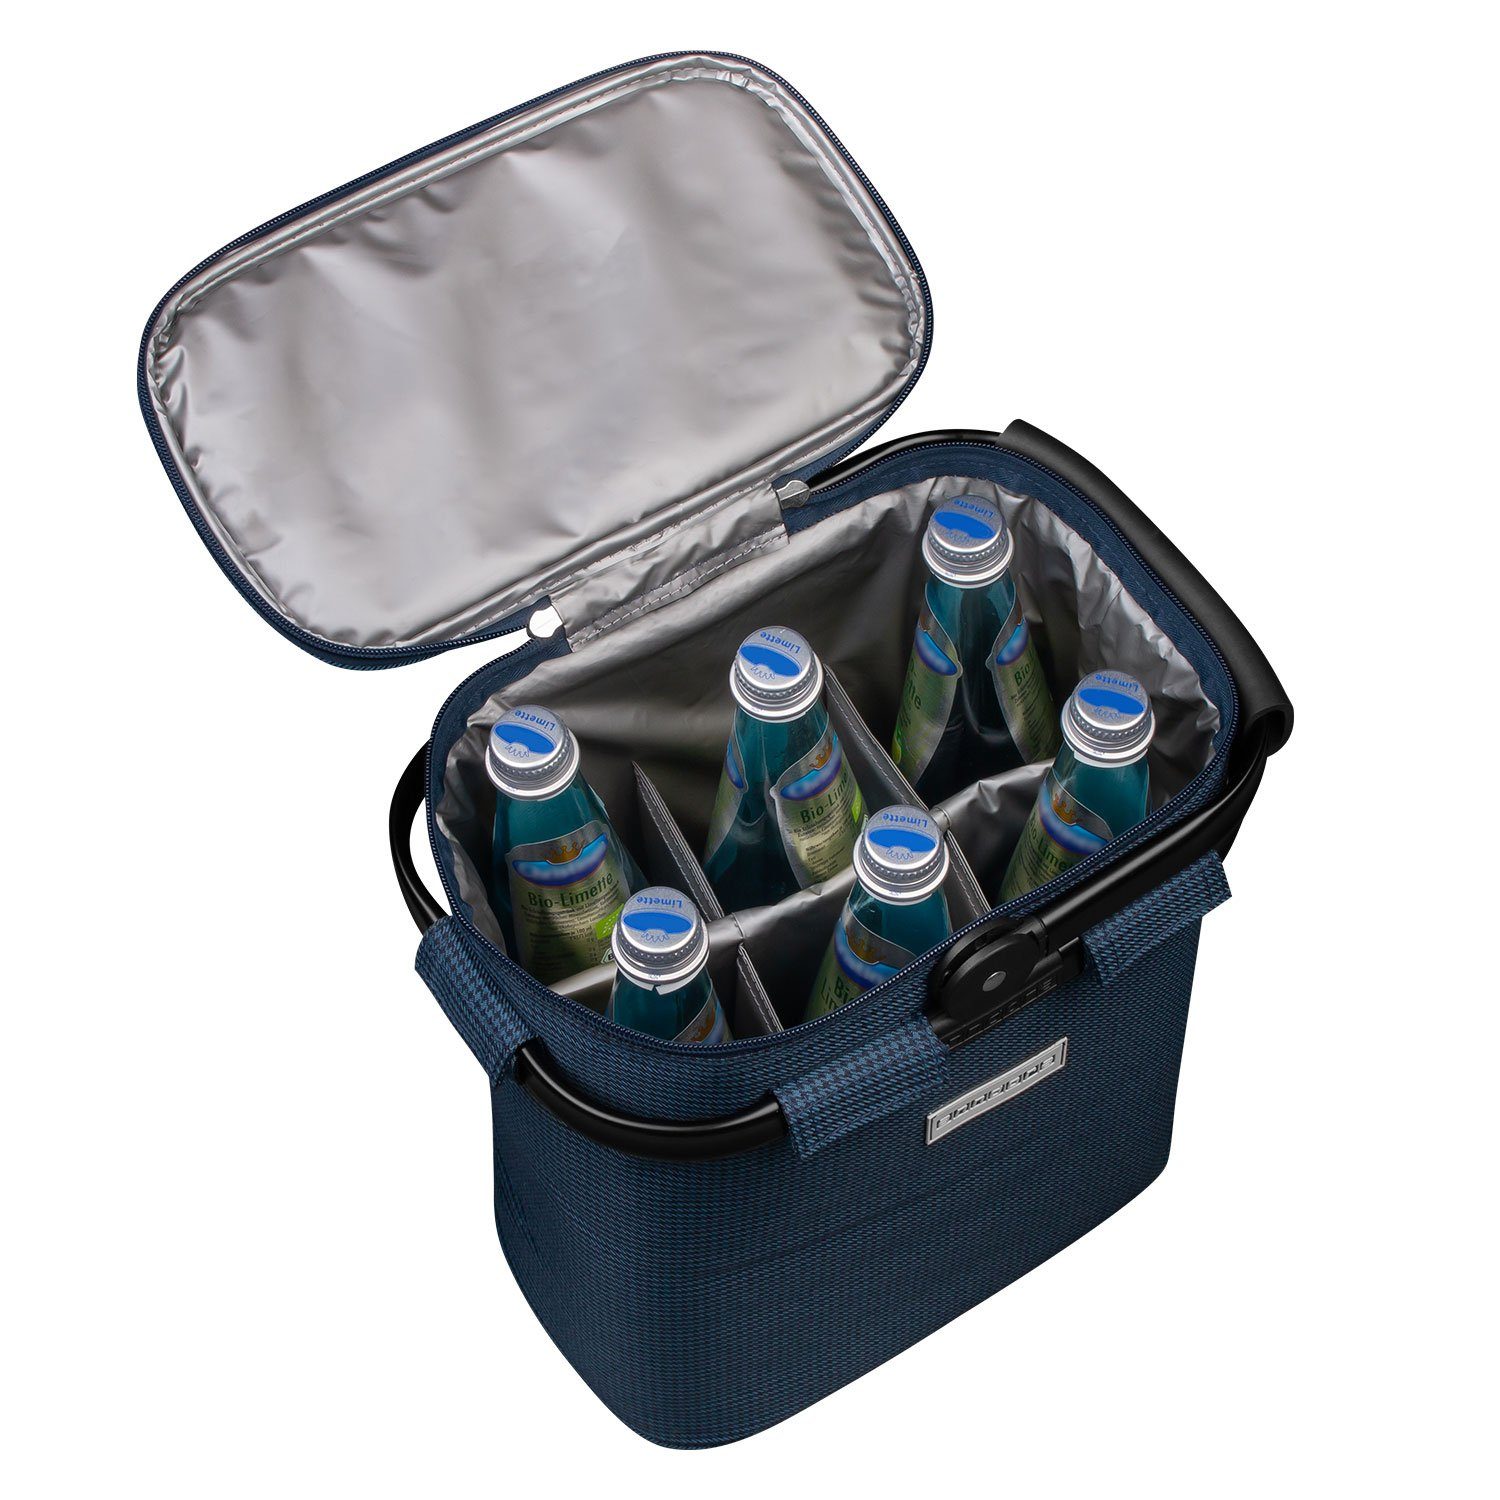 Kühlfunktion Flaschenträger Flaschen - Blau 6 Farbwahl, 6 anndora l für Einkaufskorb mit